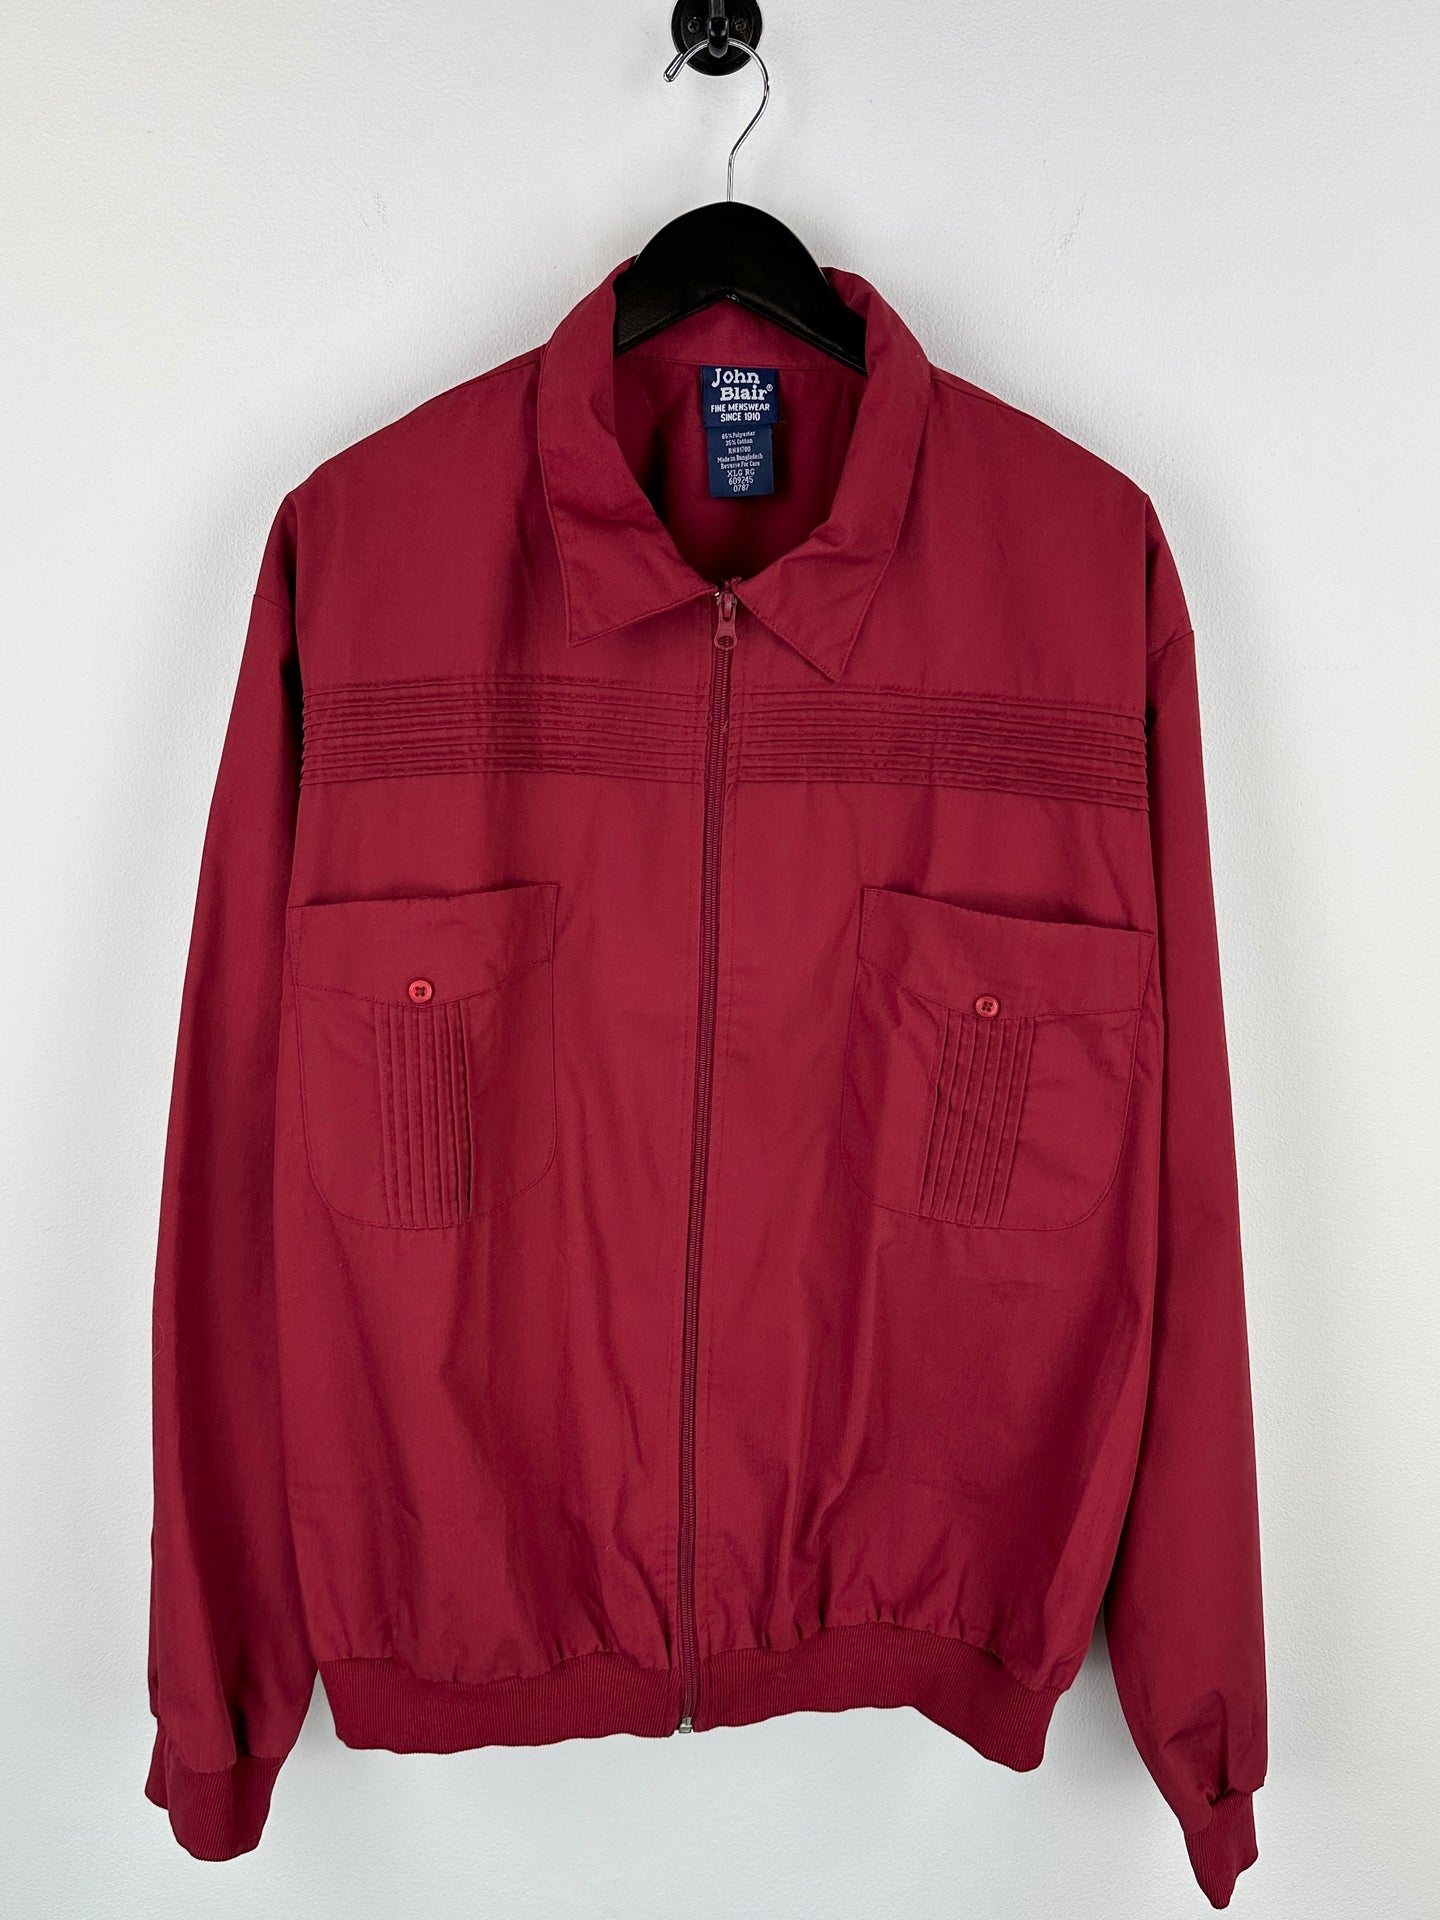 Vintage John Blair Jacket (XL)